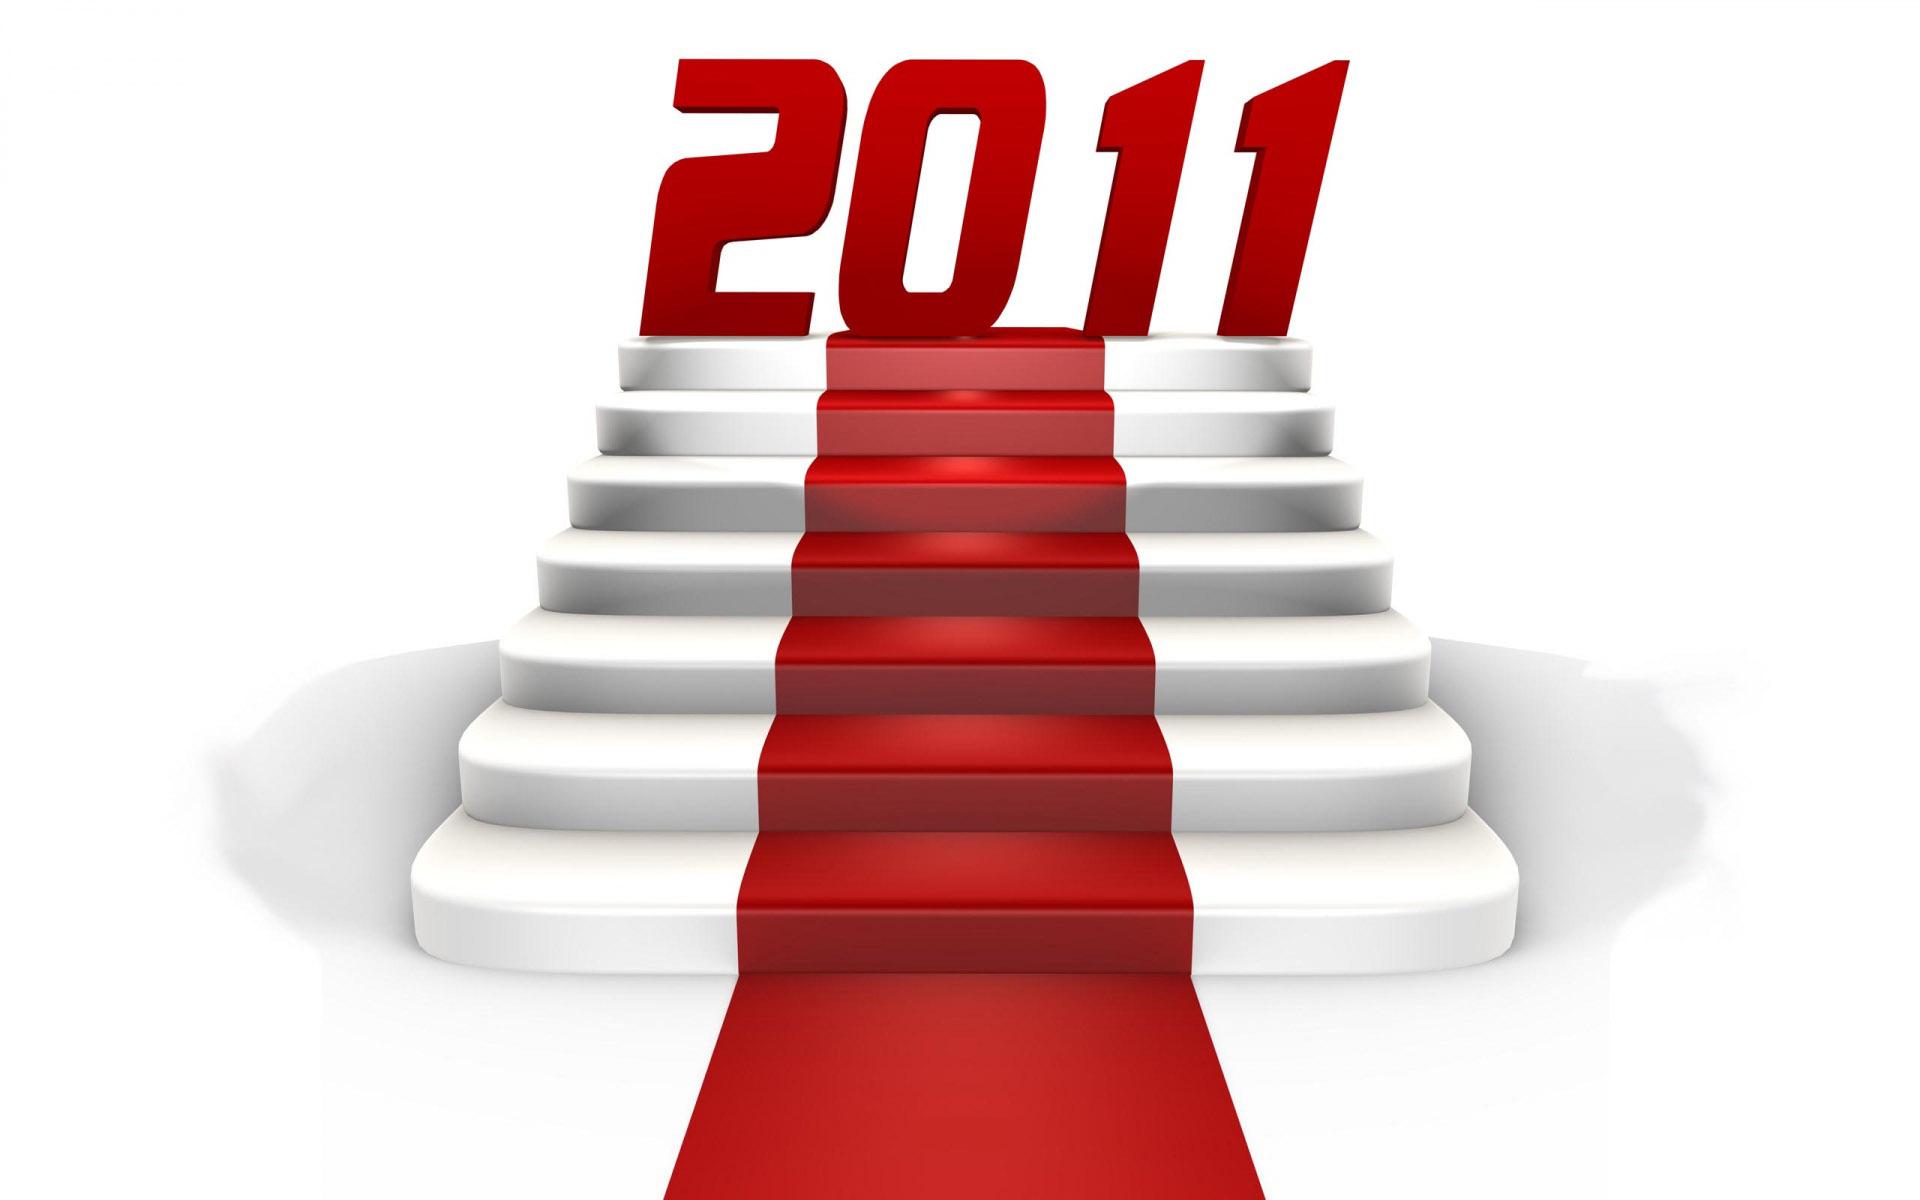 Le Blog Esthétique vous présente ses meilleurs voeux pour l'année 2011 !